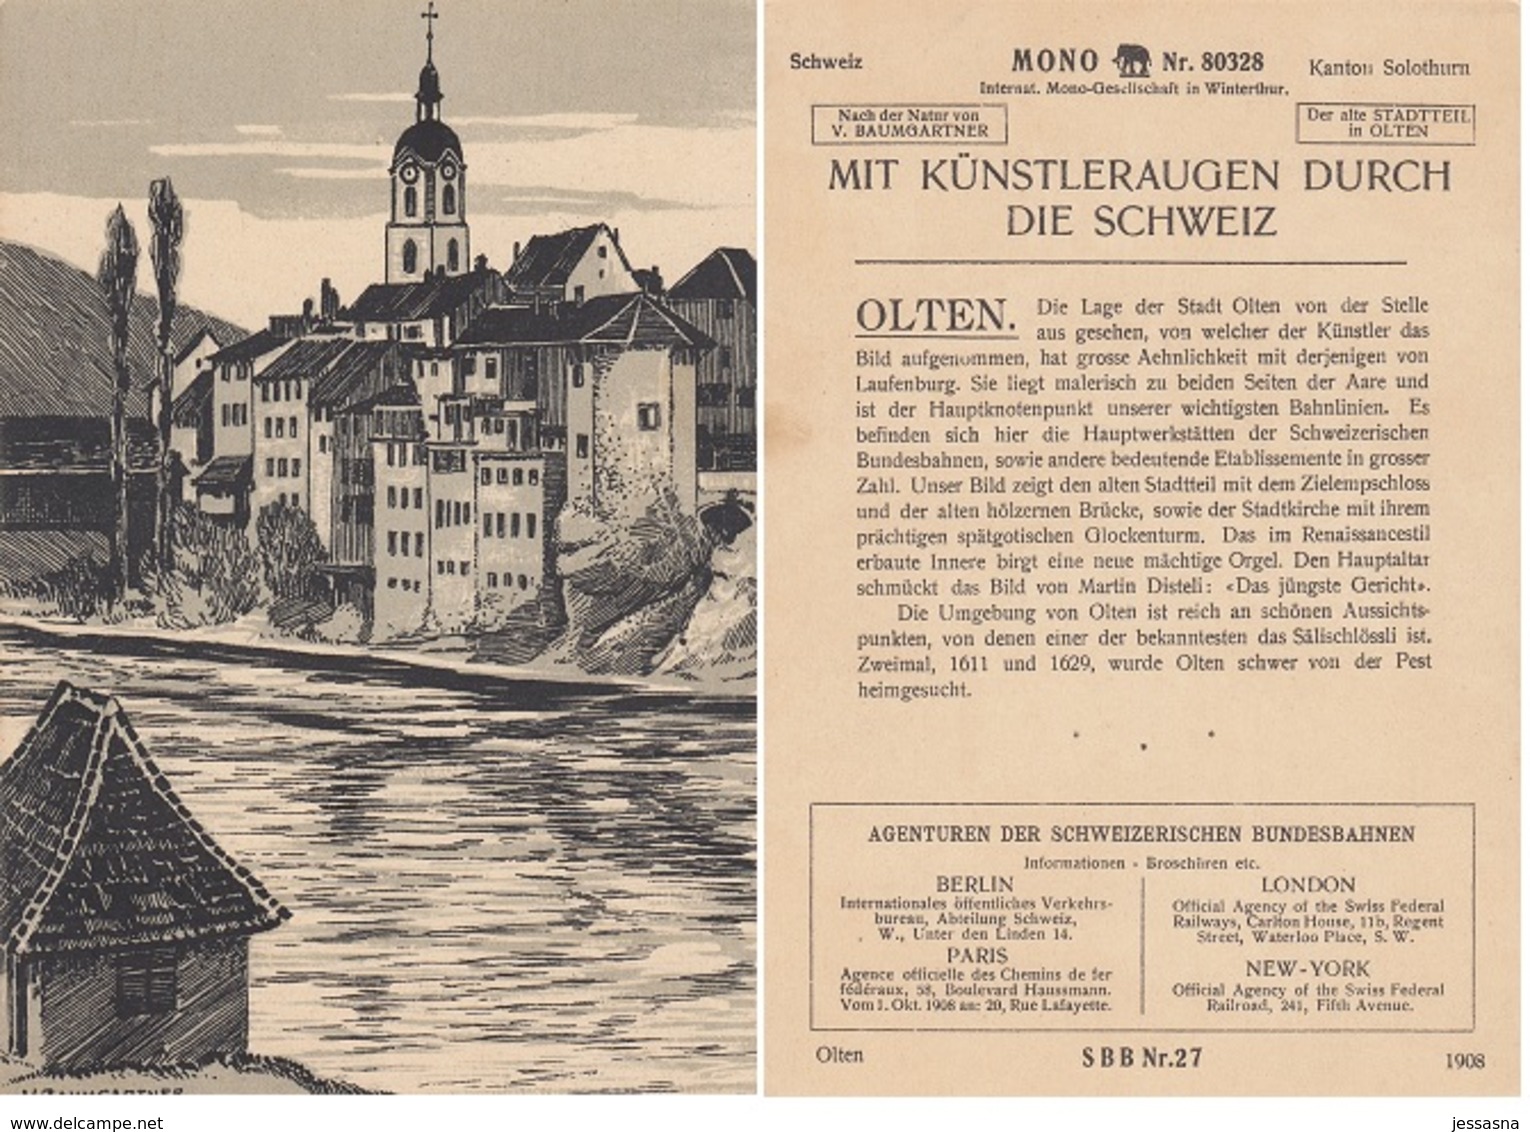 21 MONO-KARTEN - Lithografien auf Halbkarton - historische Architektur aus der Schweiz 1908